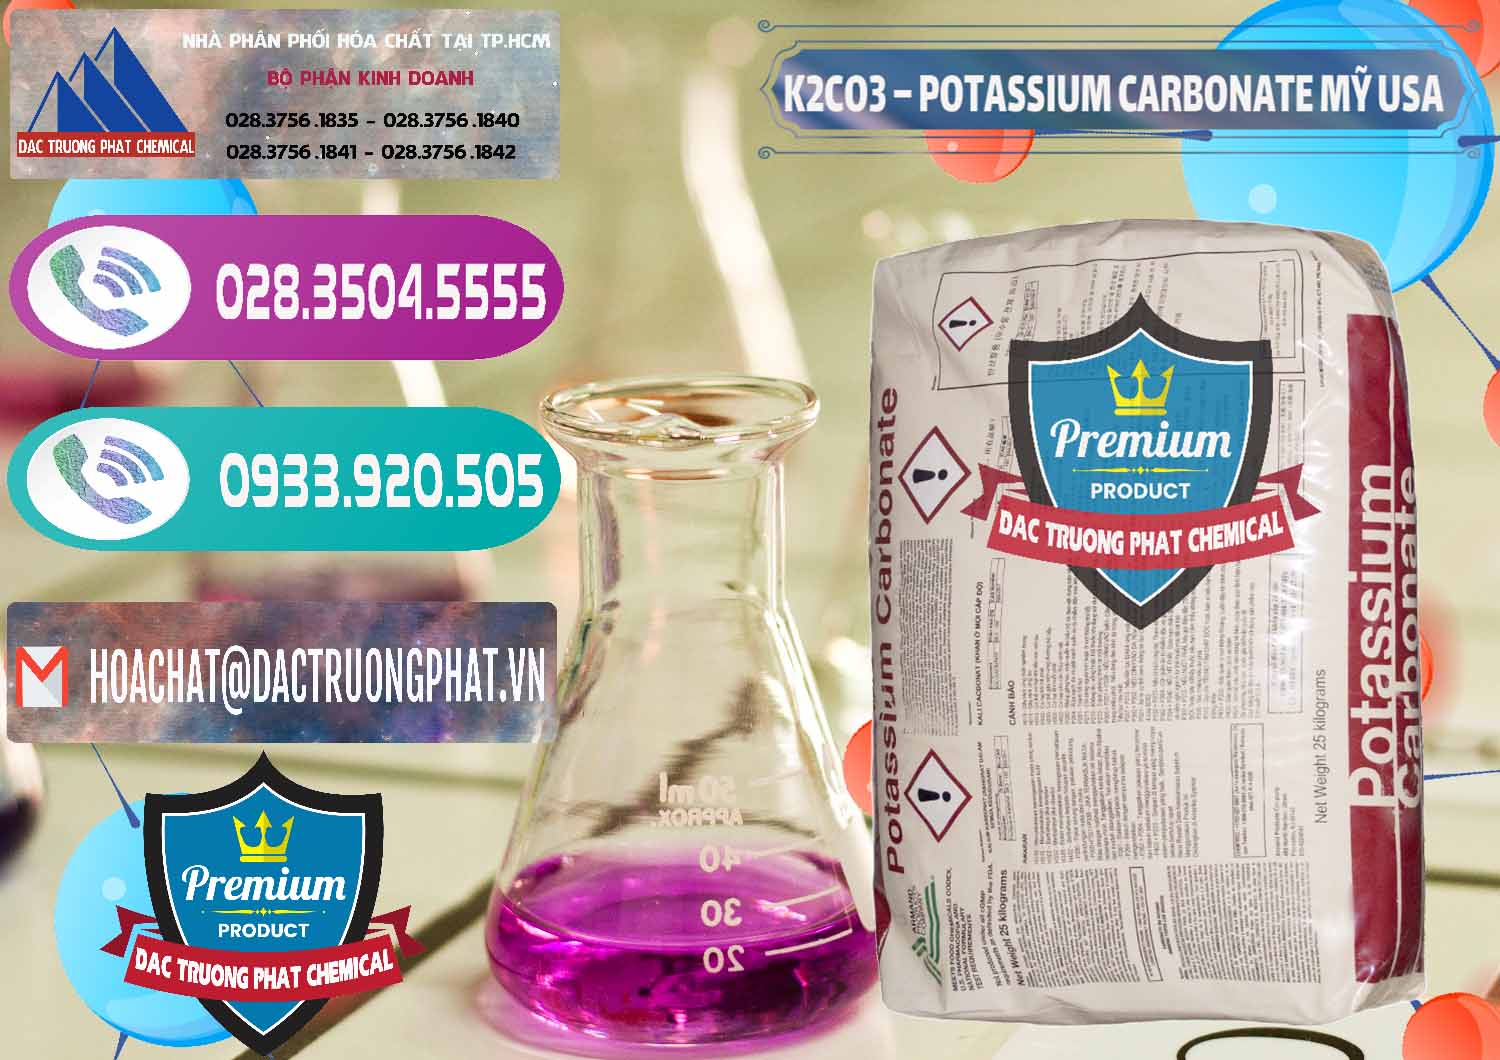 Công ty bán & cung ứng K2Co3 – Potassium Carbonate Mỹ USA - 0082 - Cty cung cấp - bán hóa chất tại TP.HCM - hoachatxulynuoc.com